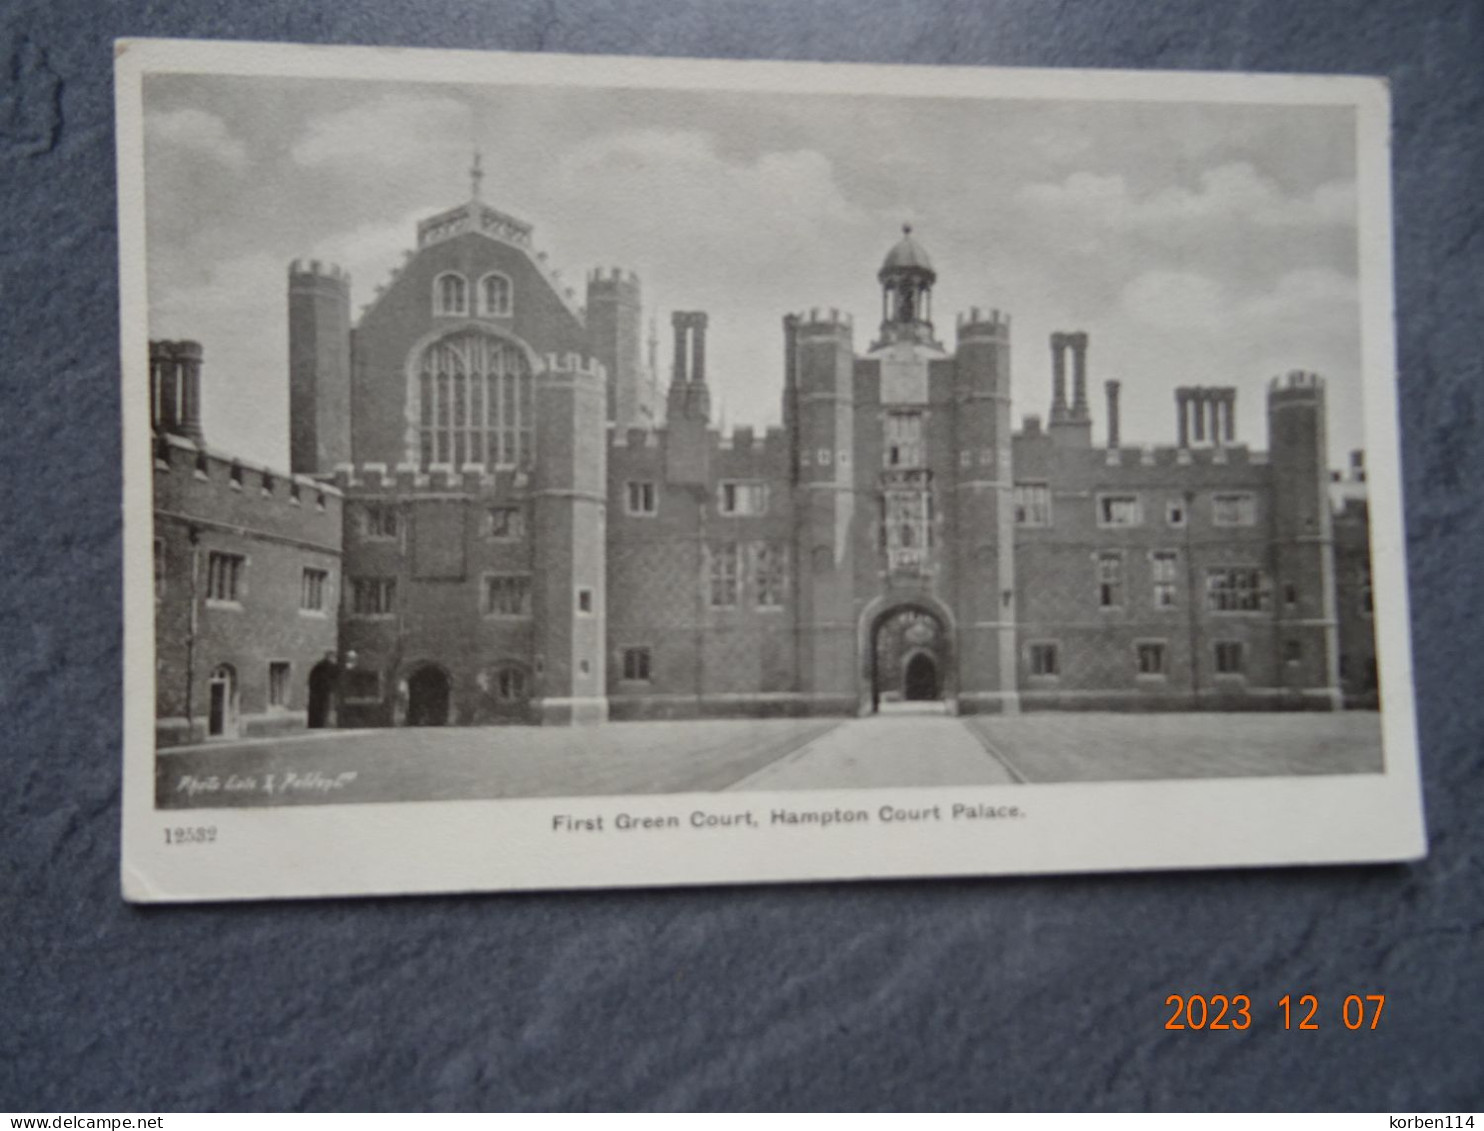 FIRST GREEN COURT - Hampton Court